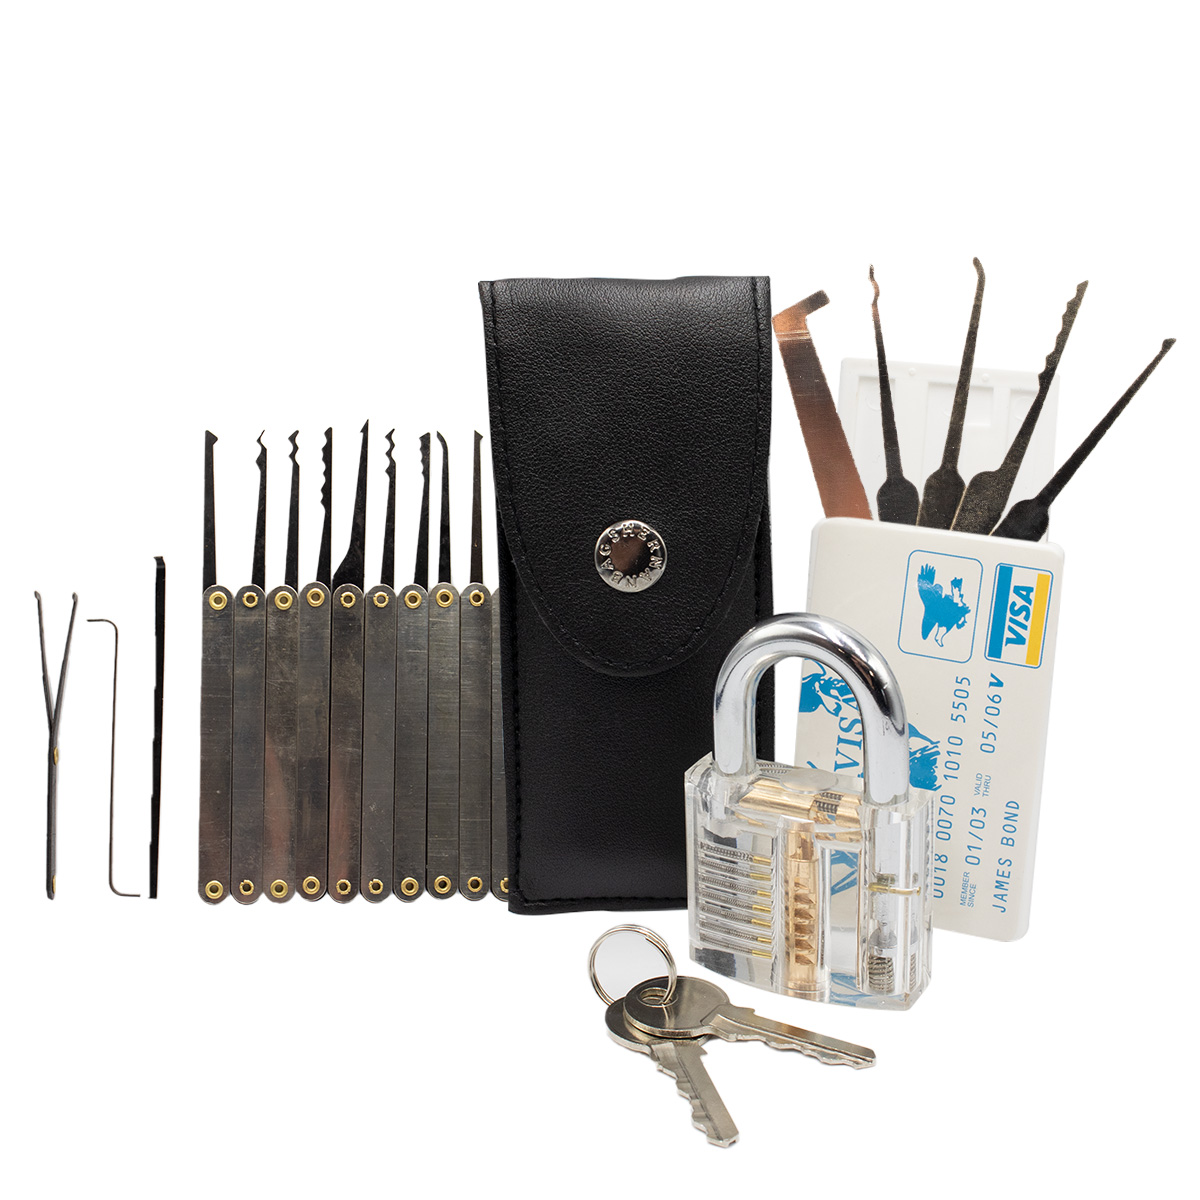 Professionelles Knobel-Set Schlösser öffnen mit 25 Werkzeugen im  Kreditkartenformat, Werkzeugsets, Handwerkzeuge, Werkzeug